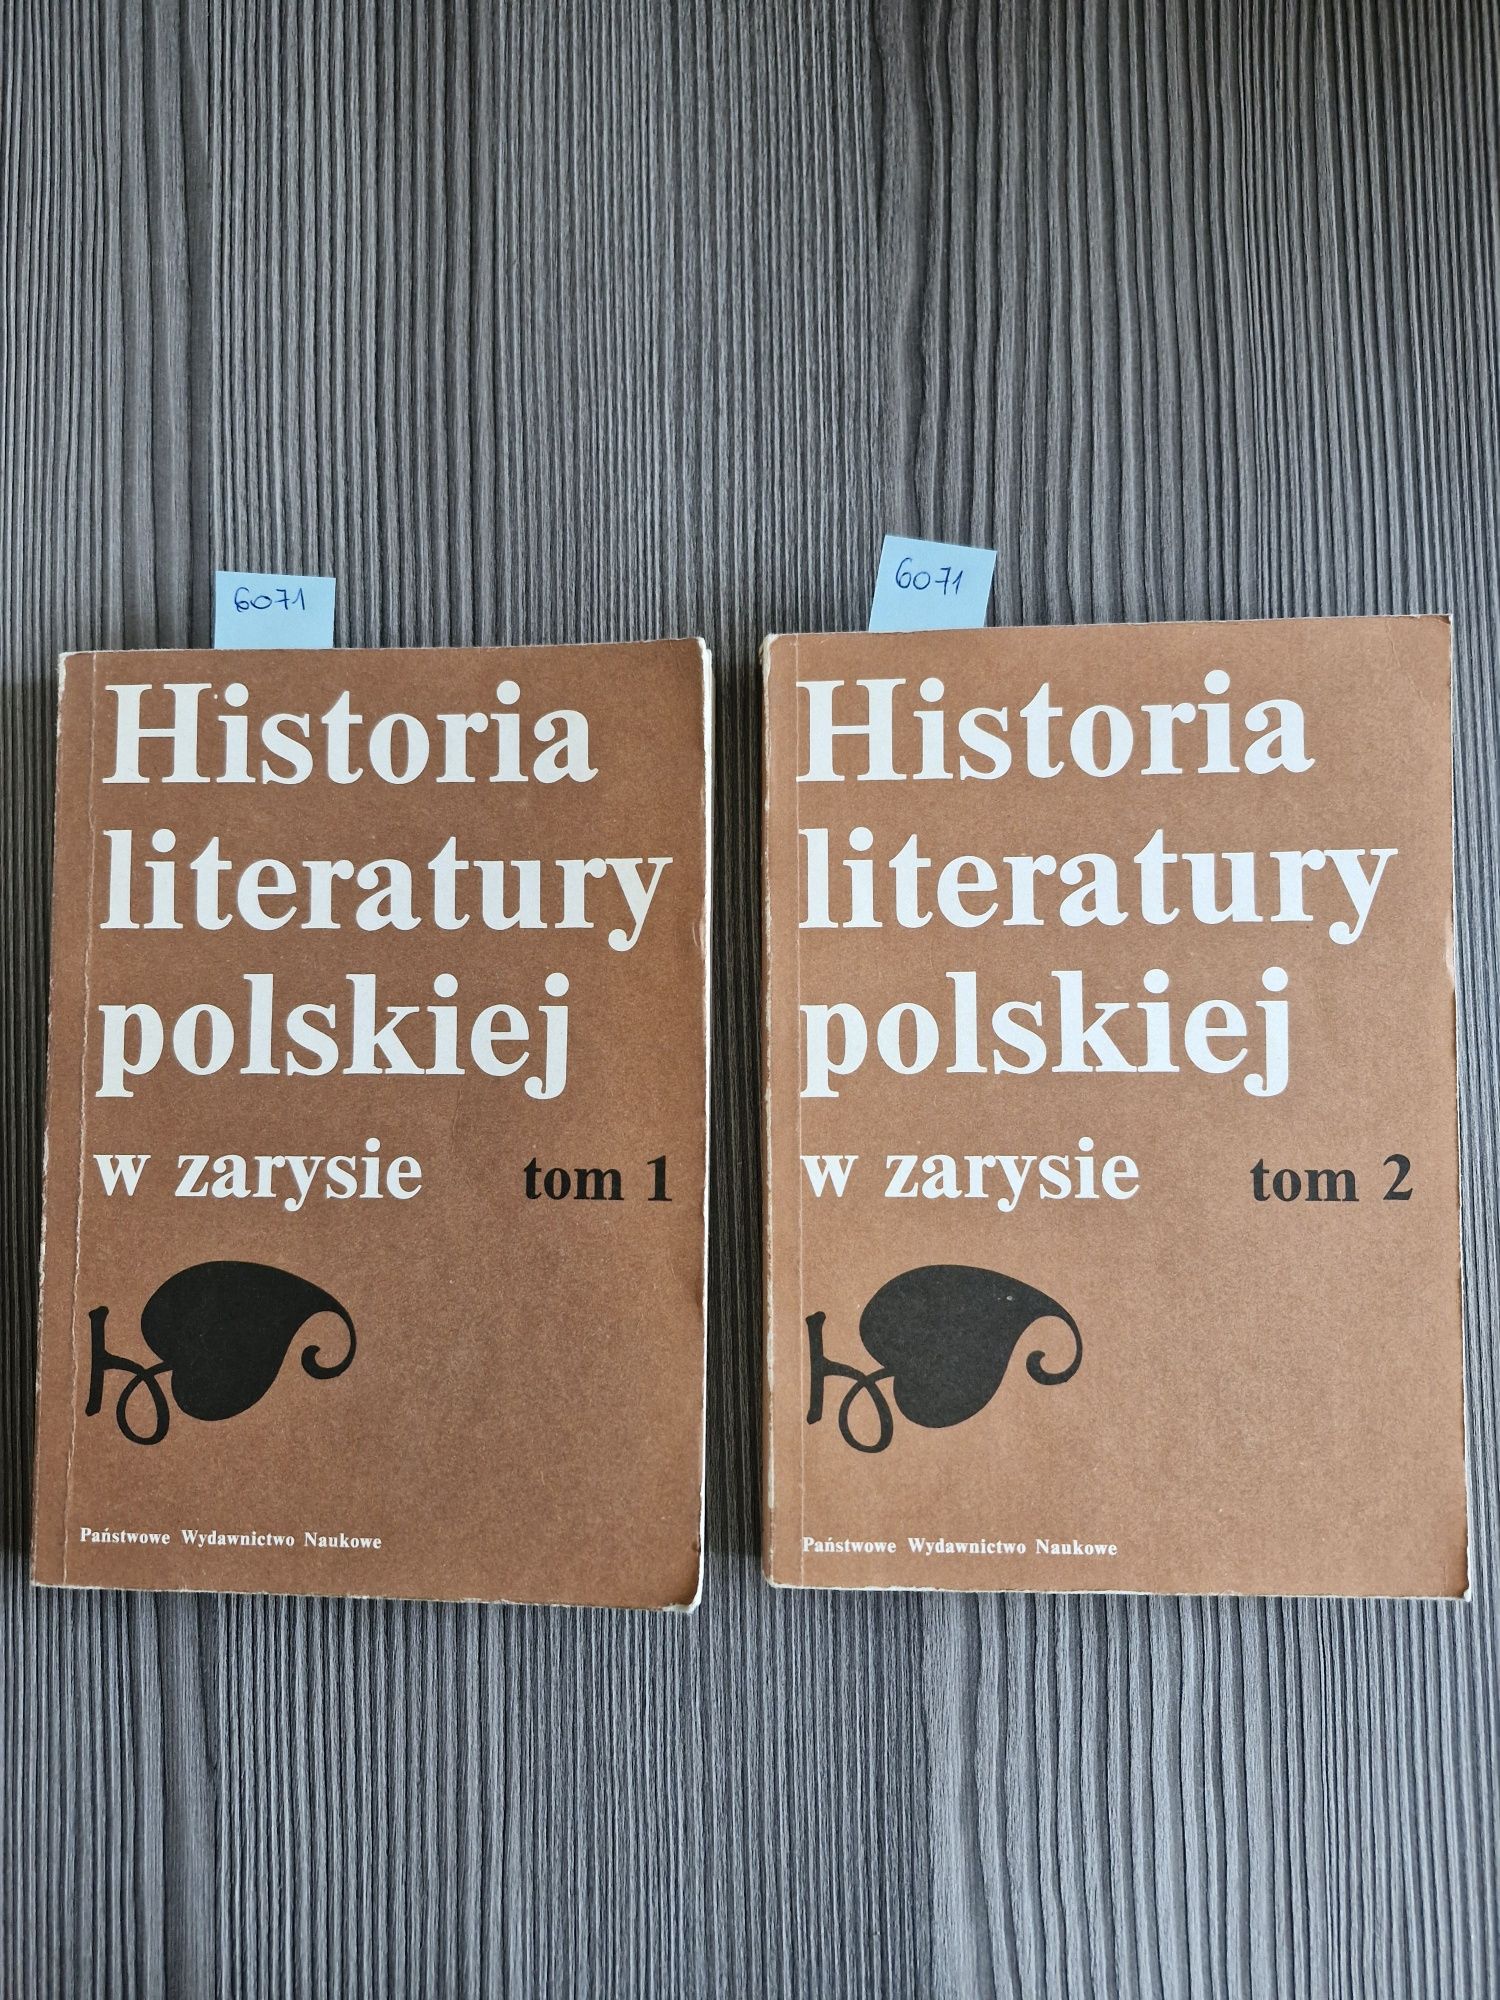 6071. "Historia literatury polskiej w zarysie" Tom I, Tom II